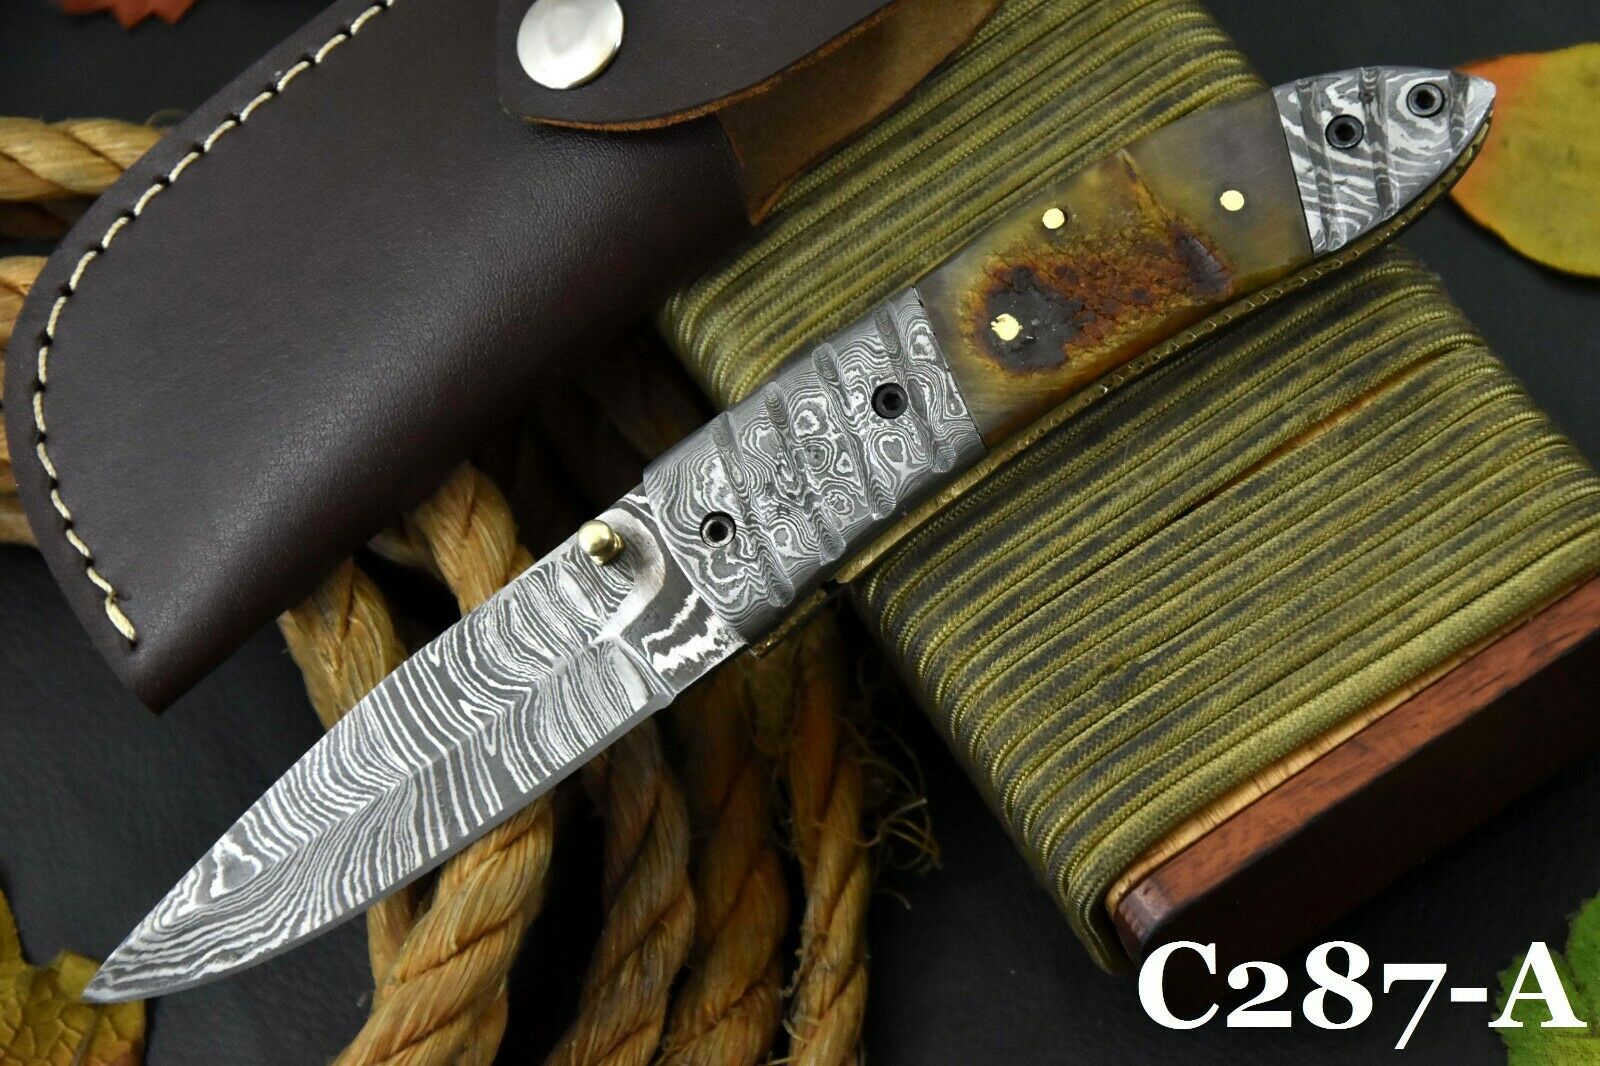 Custom Hand Forged Damascus Steel Folding Knife Handmade,rams Horn Handle(c287-a